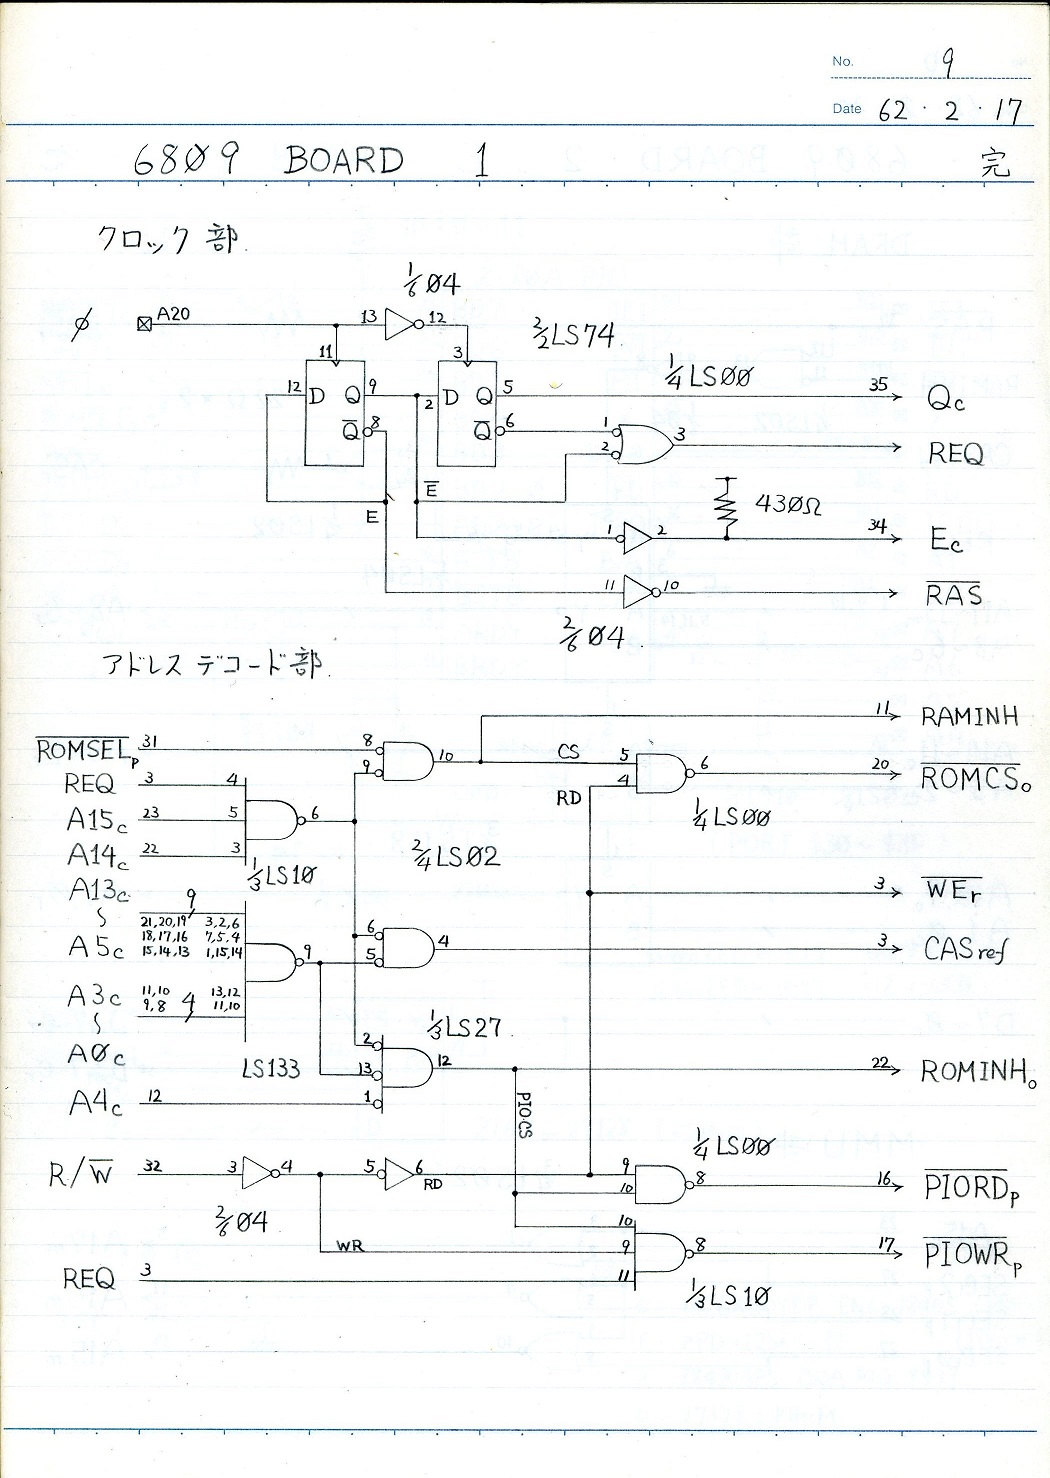 6809 board circuit 1